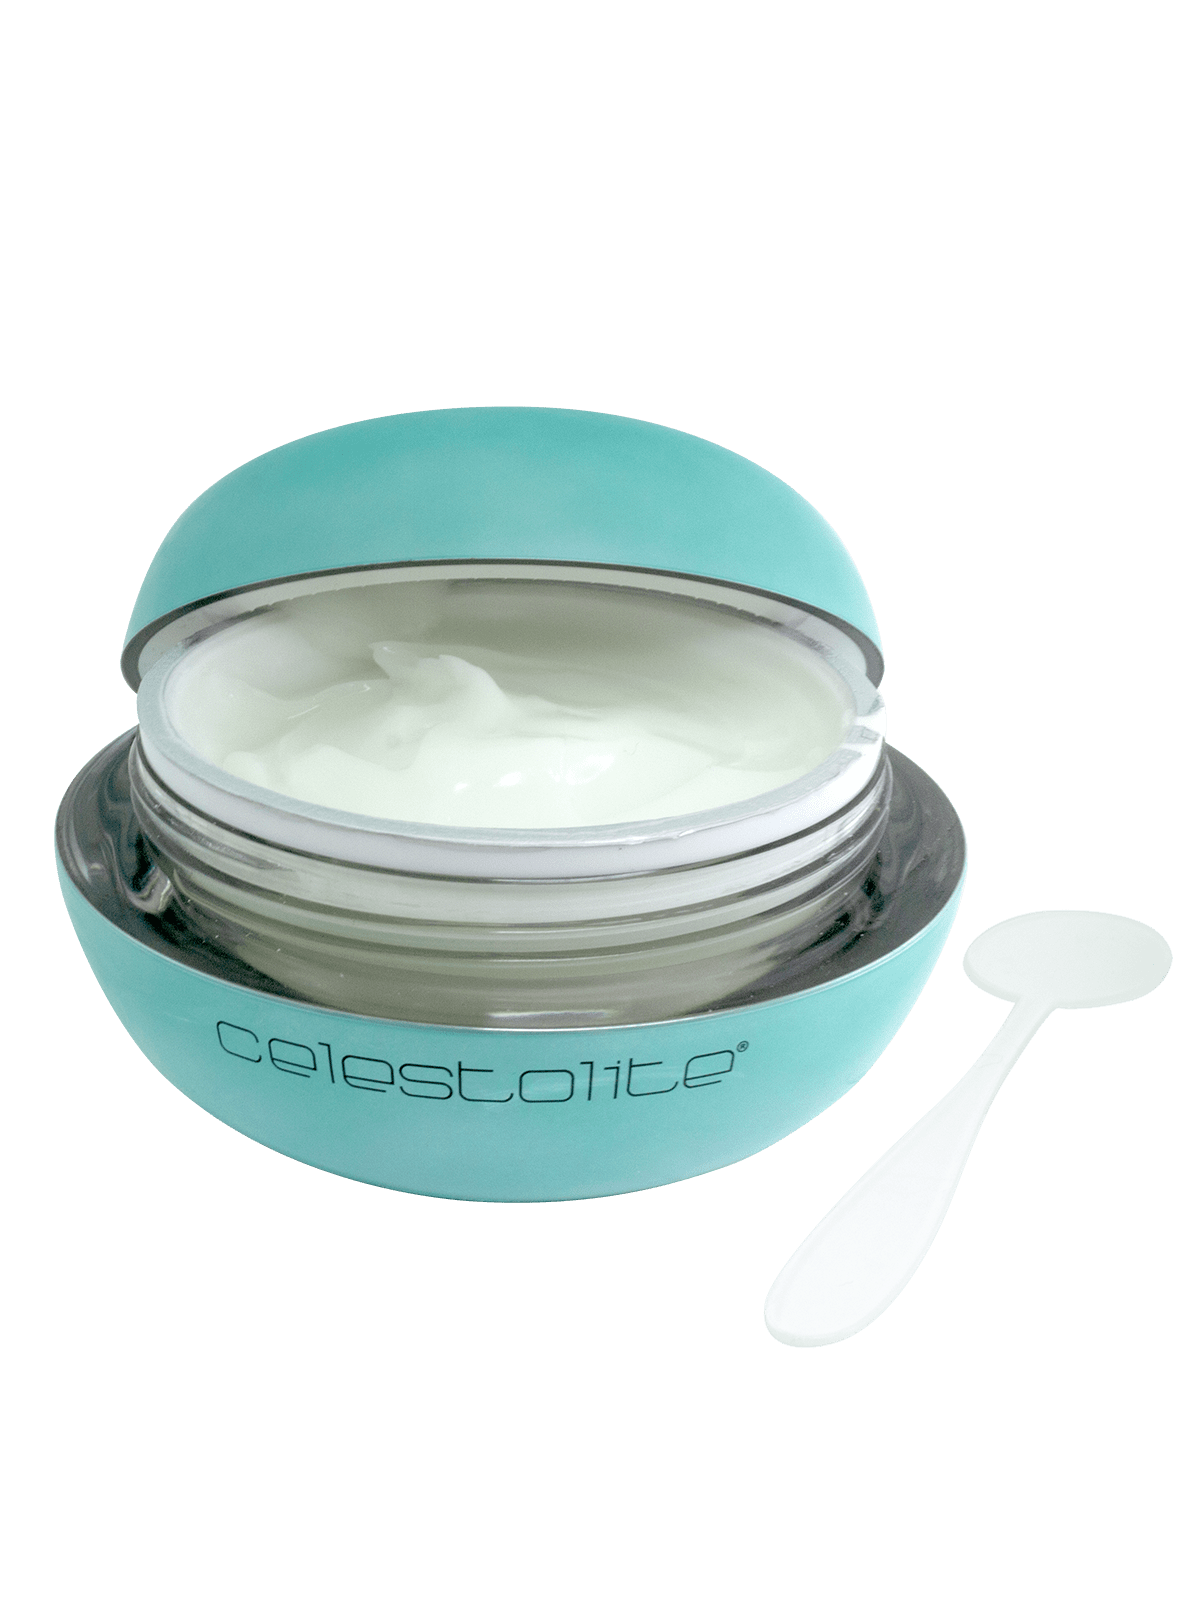 Jade Spectra Mask Products Shop Skin Care Celestolite